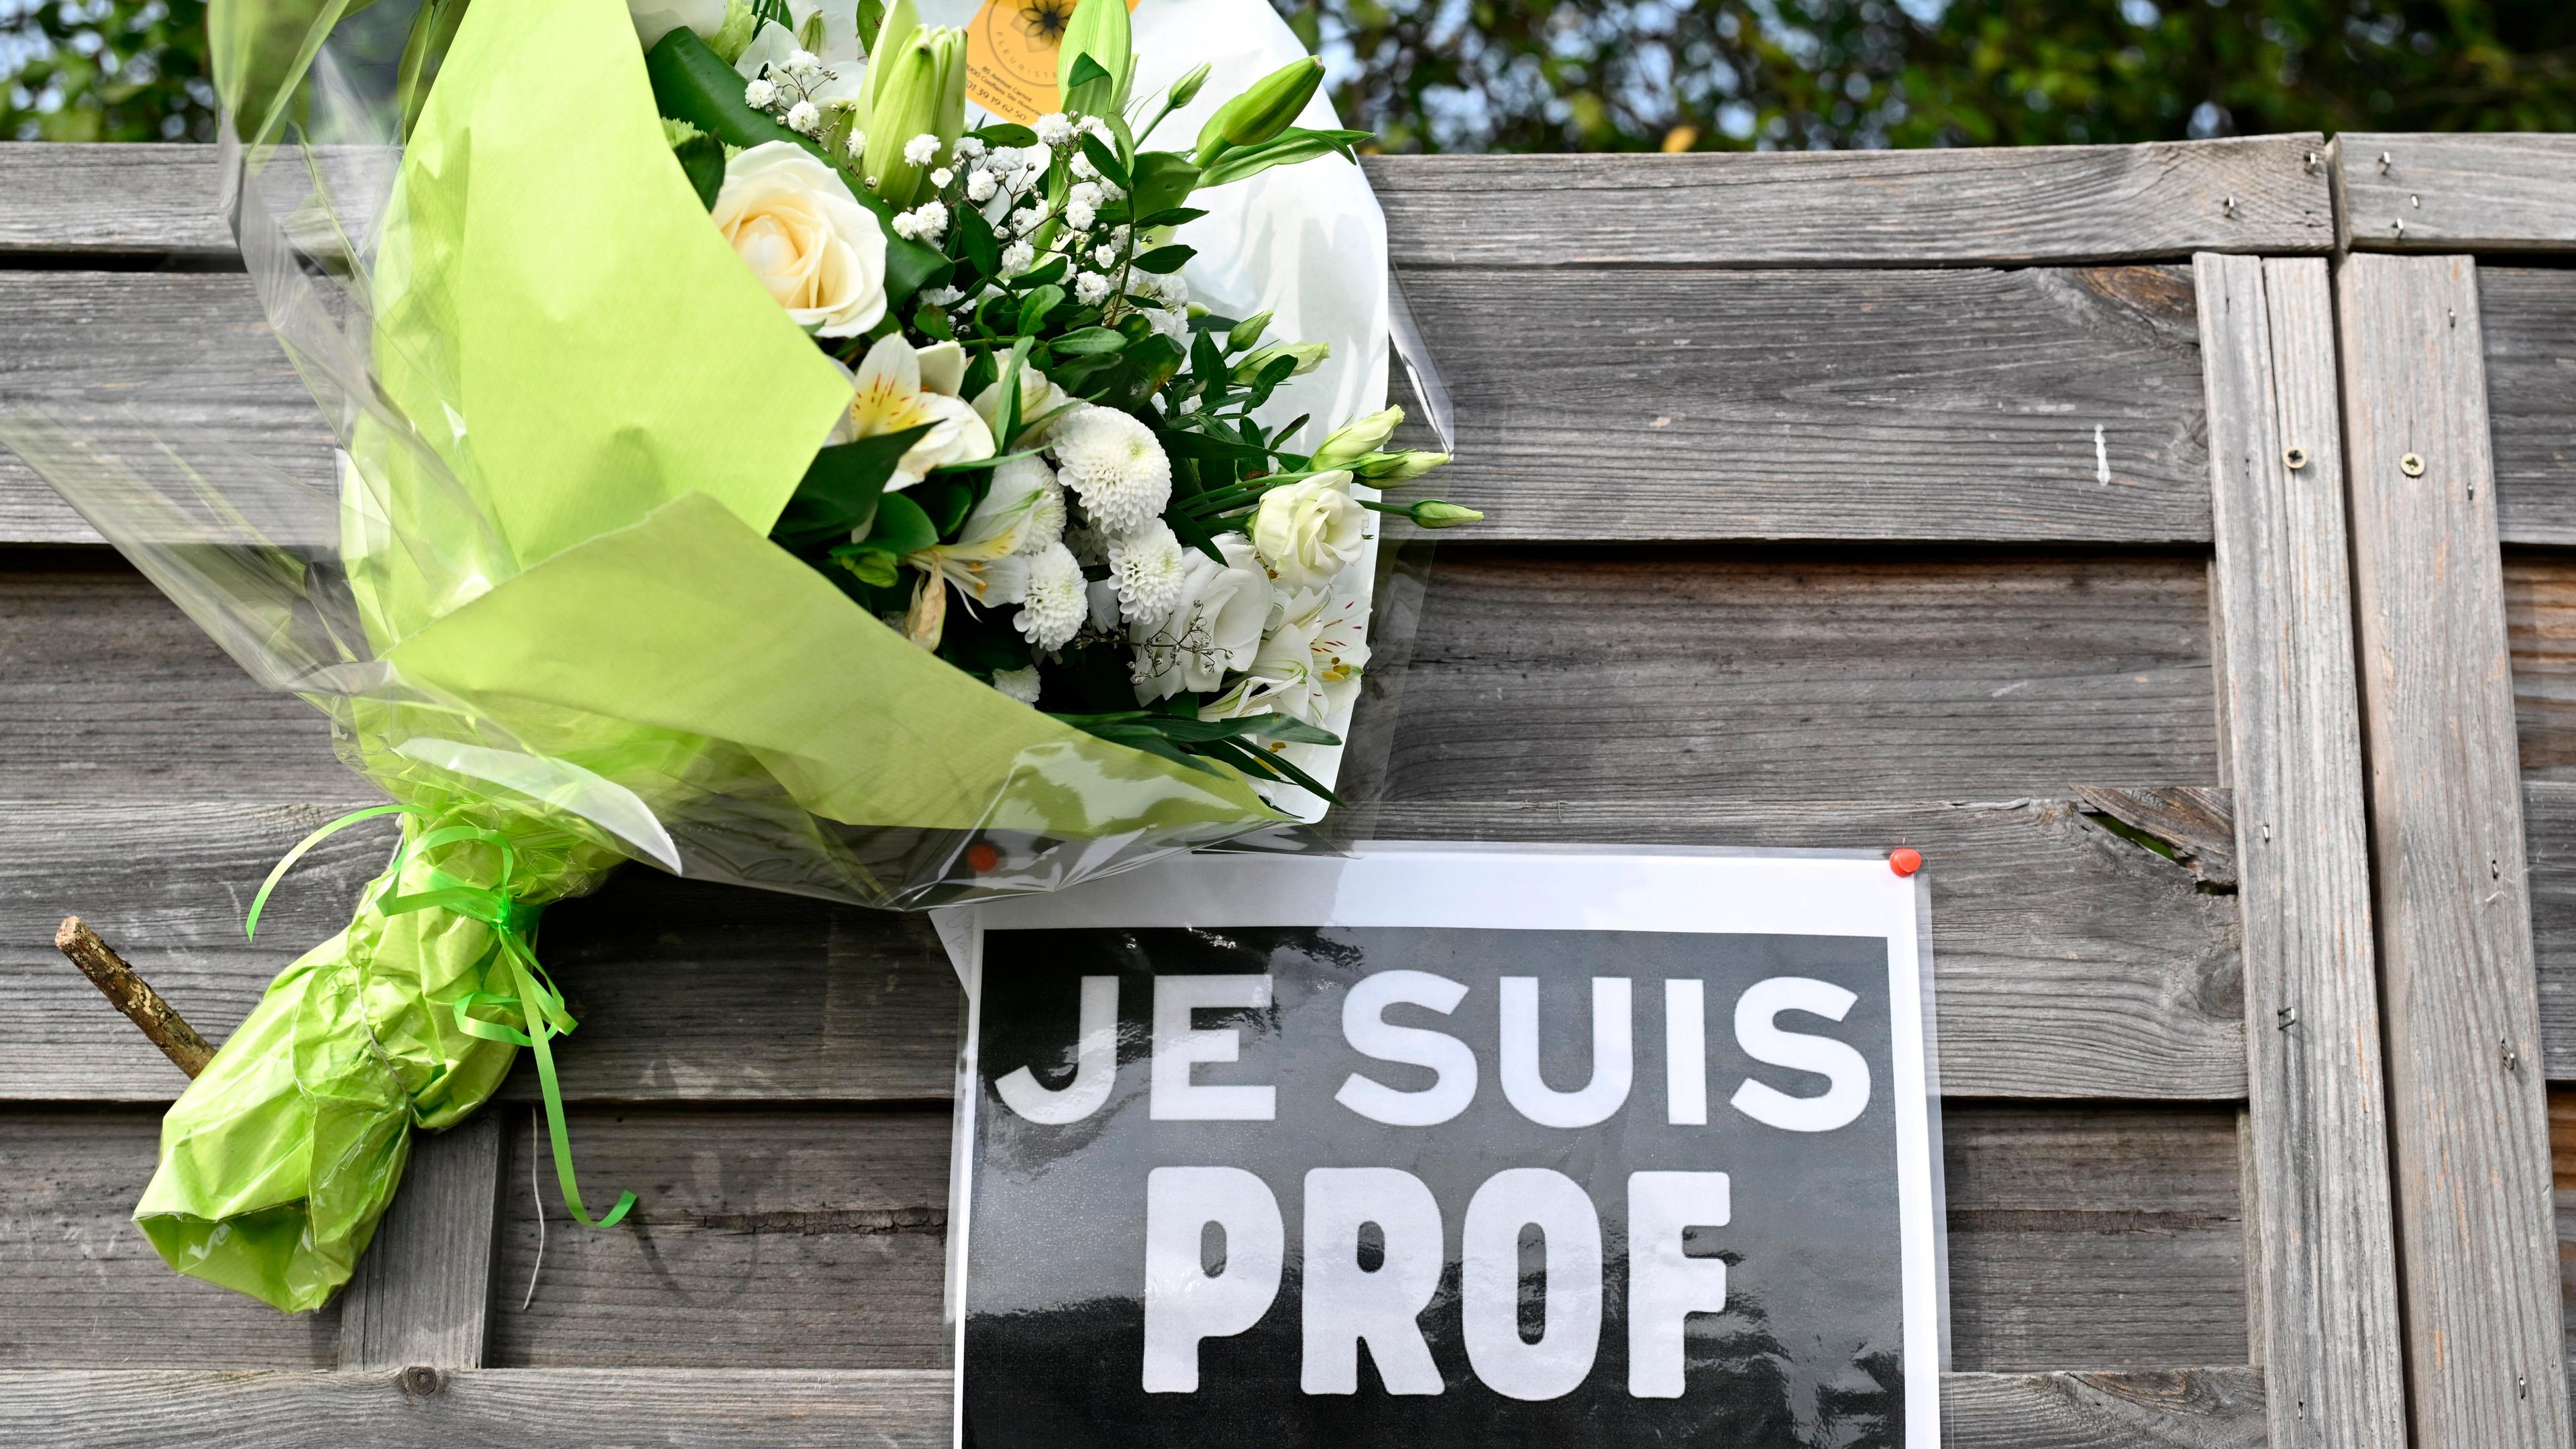 Ein Blumenstrauß sowie ein Zettel mit der Aufschrift "Je suis Prof" (Ich bin Lehrer) zum Gedenken an den ermordeten Lehrer Samuel Paty.